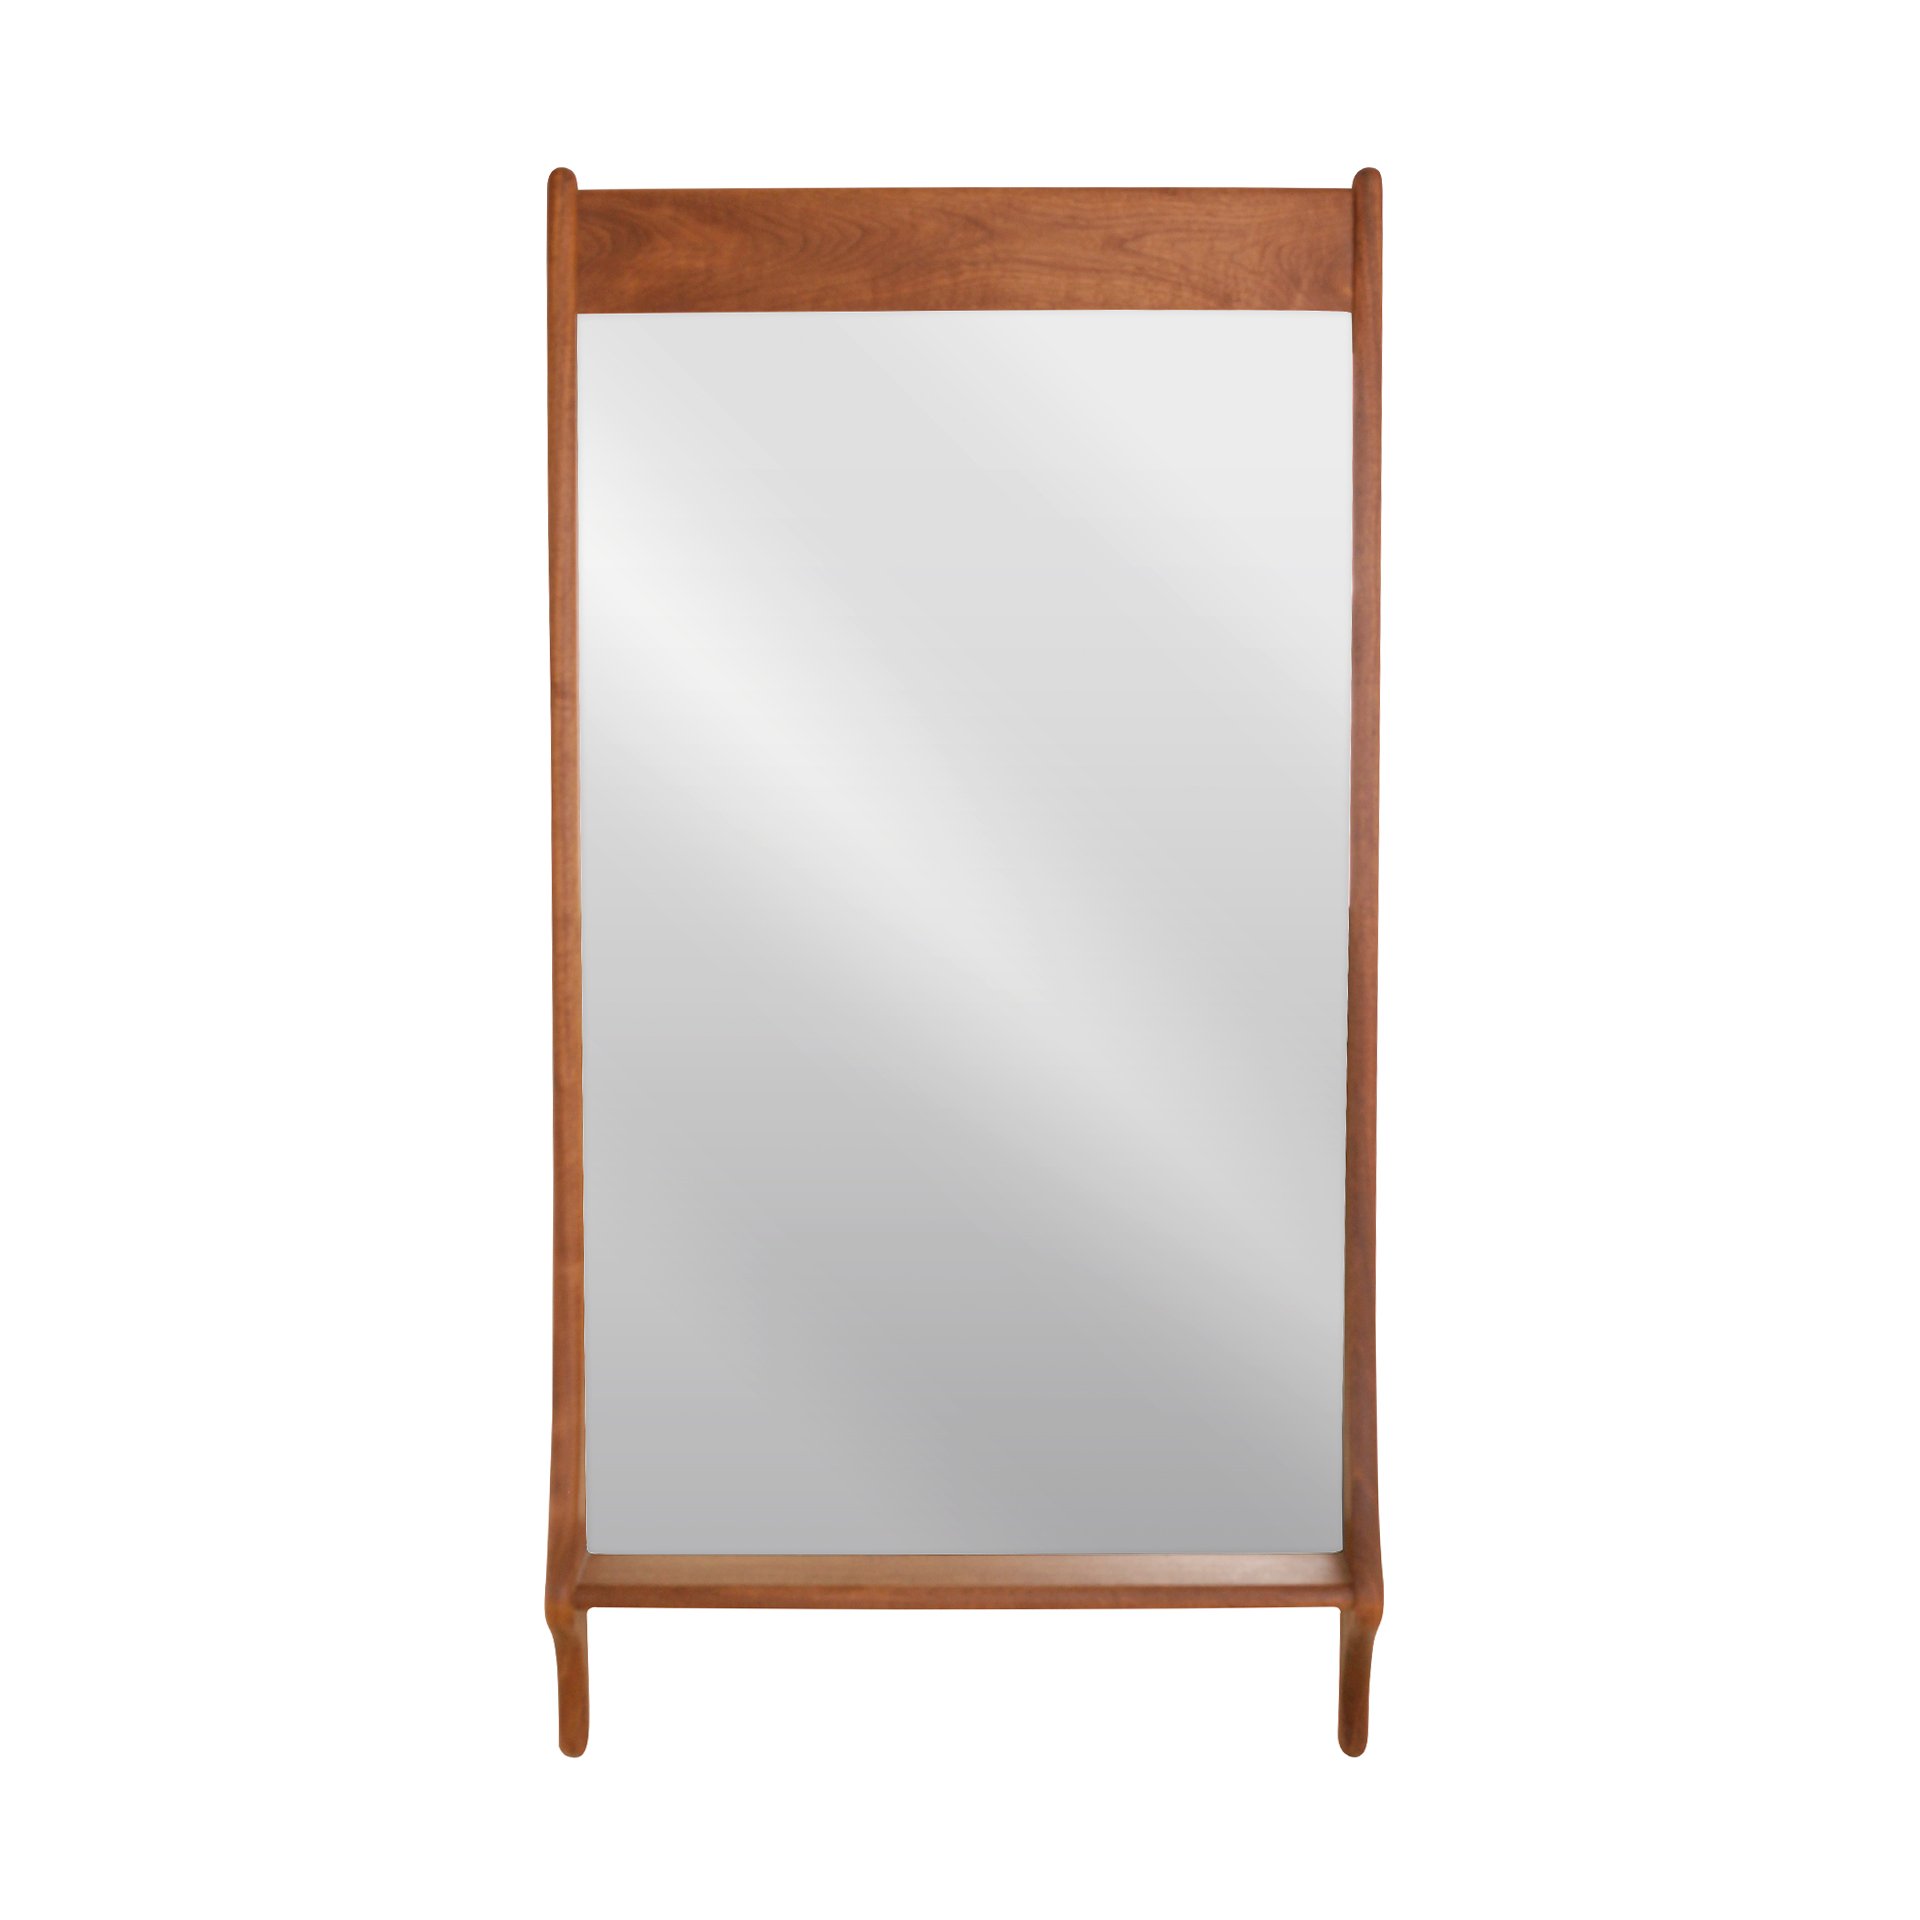 The Sachi Mirror